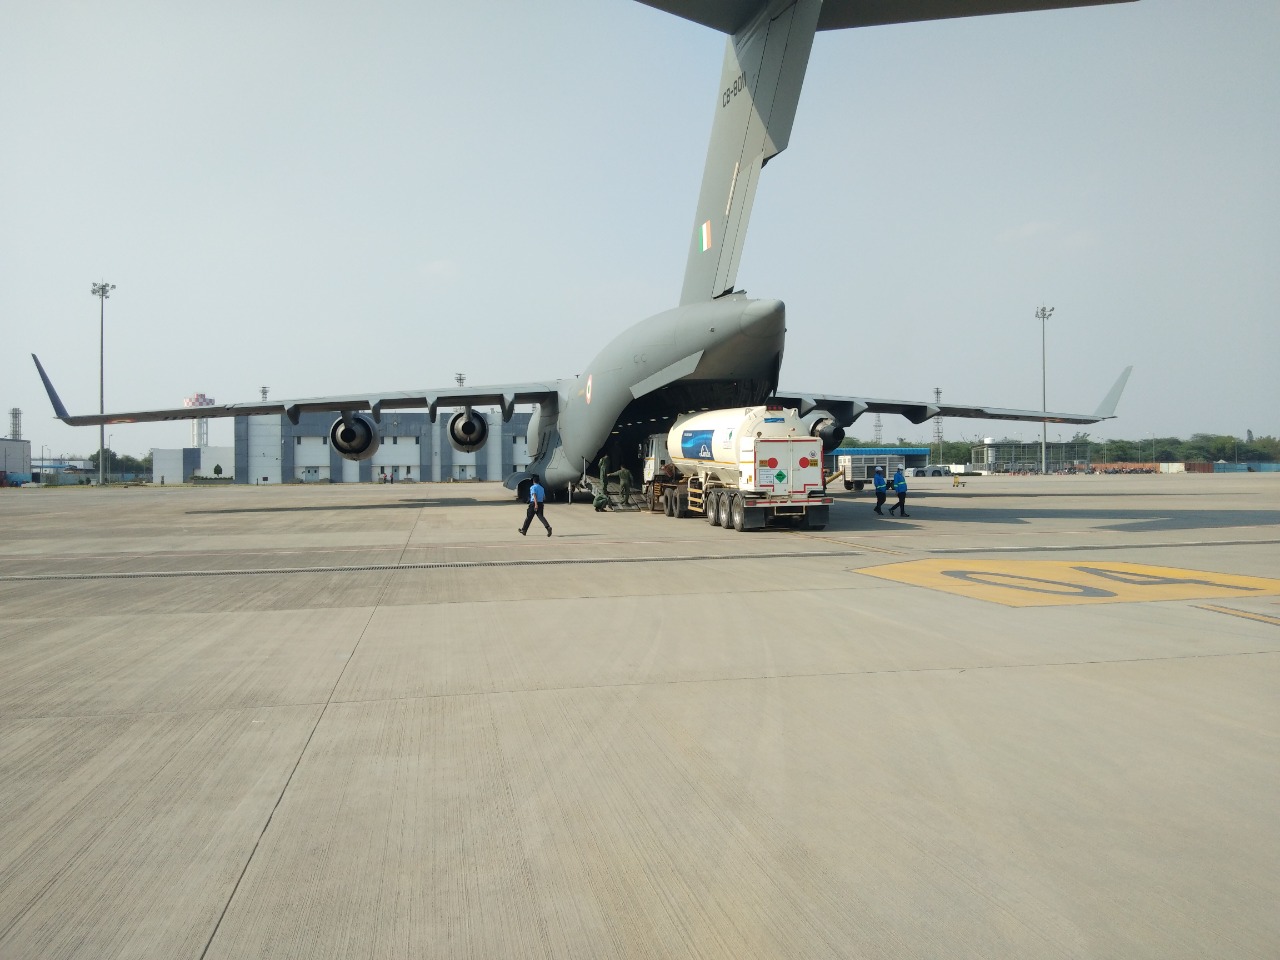 भारतीय हवाई दलाच्या सी -१७ आणि एल ७६ विमानांनी बुधवारी ऑक्सिजन टँकर्सची वाहतूक केली. (सर्व फोटो : Twitter/IAF_MCC वरुन साभार)